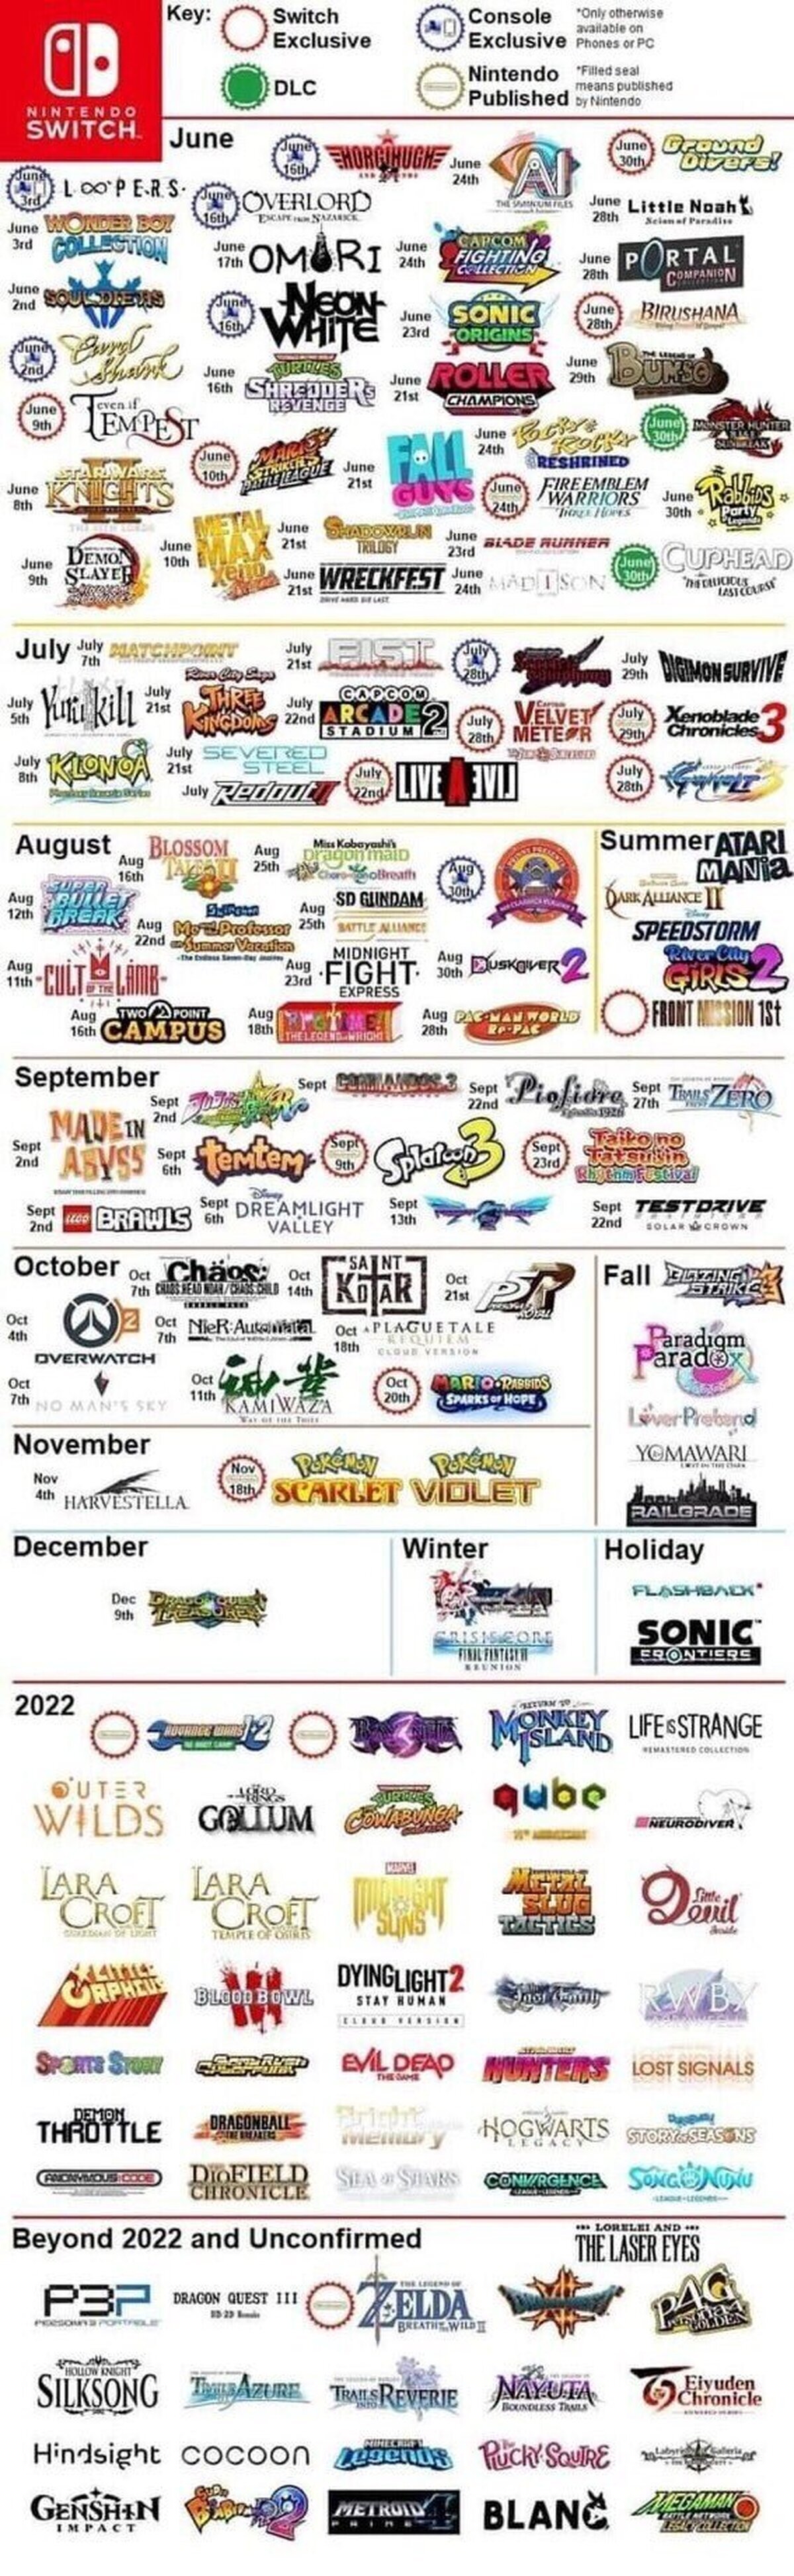 Lanzamientos #NintendoSwitch para este año